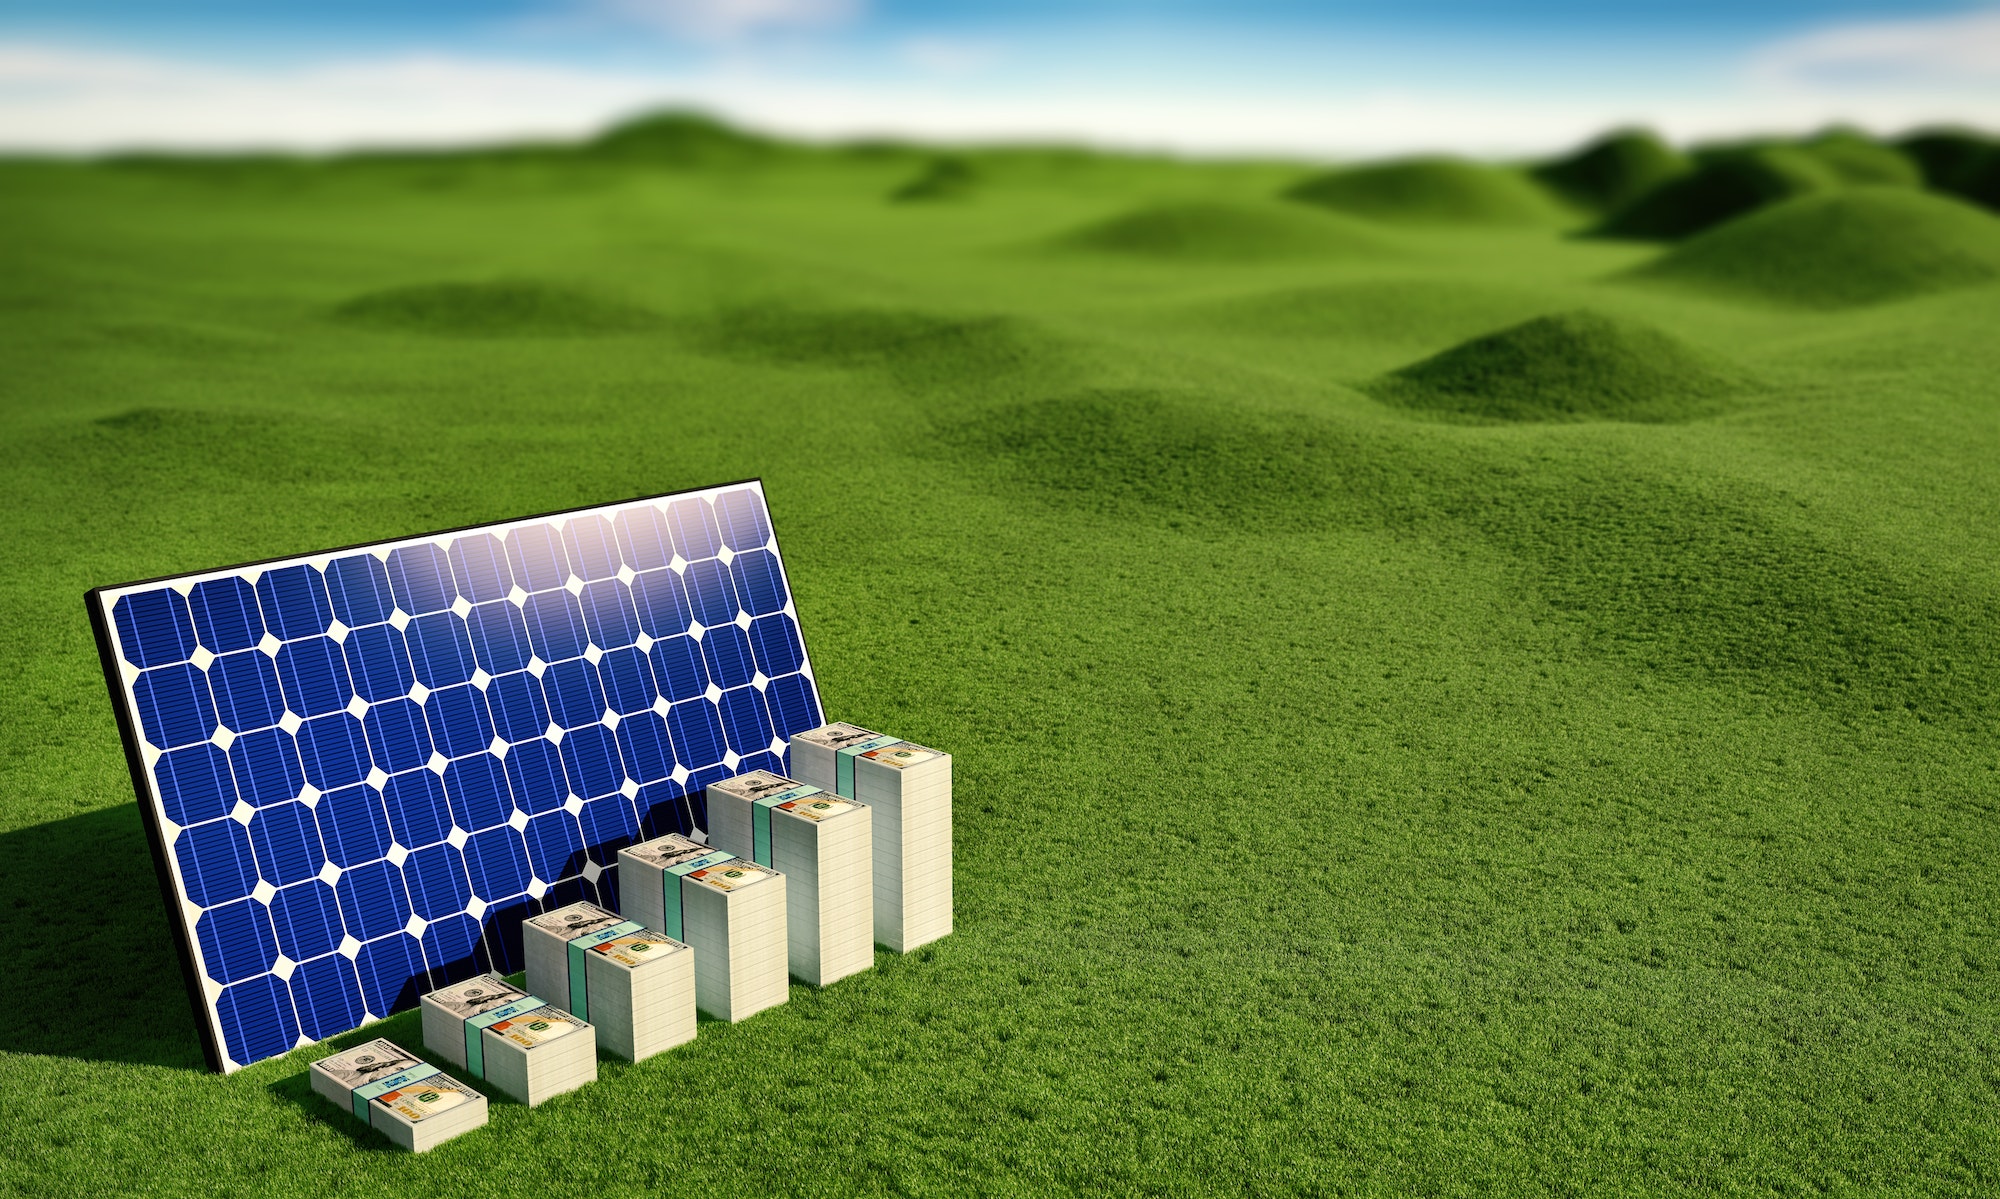 Solar Panel - earn money from renewable energy